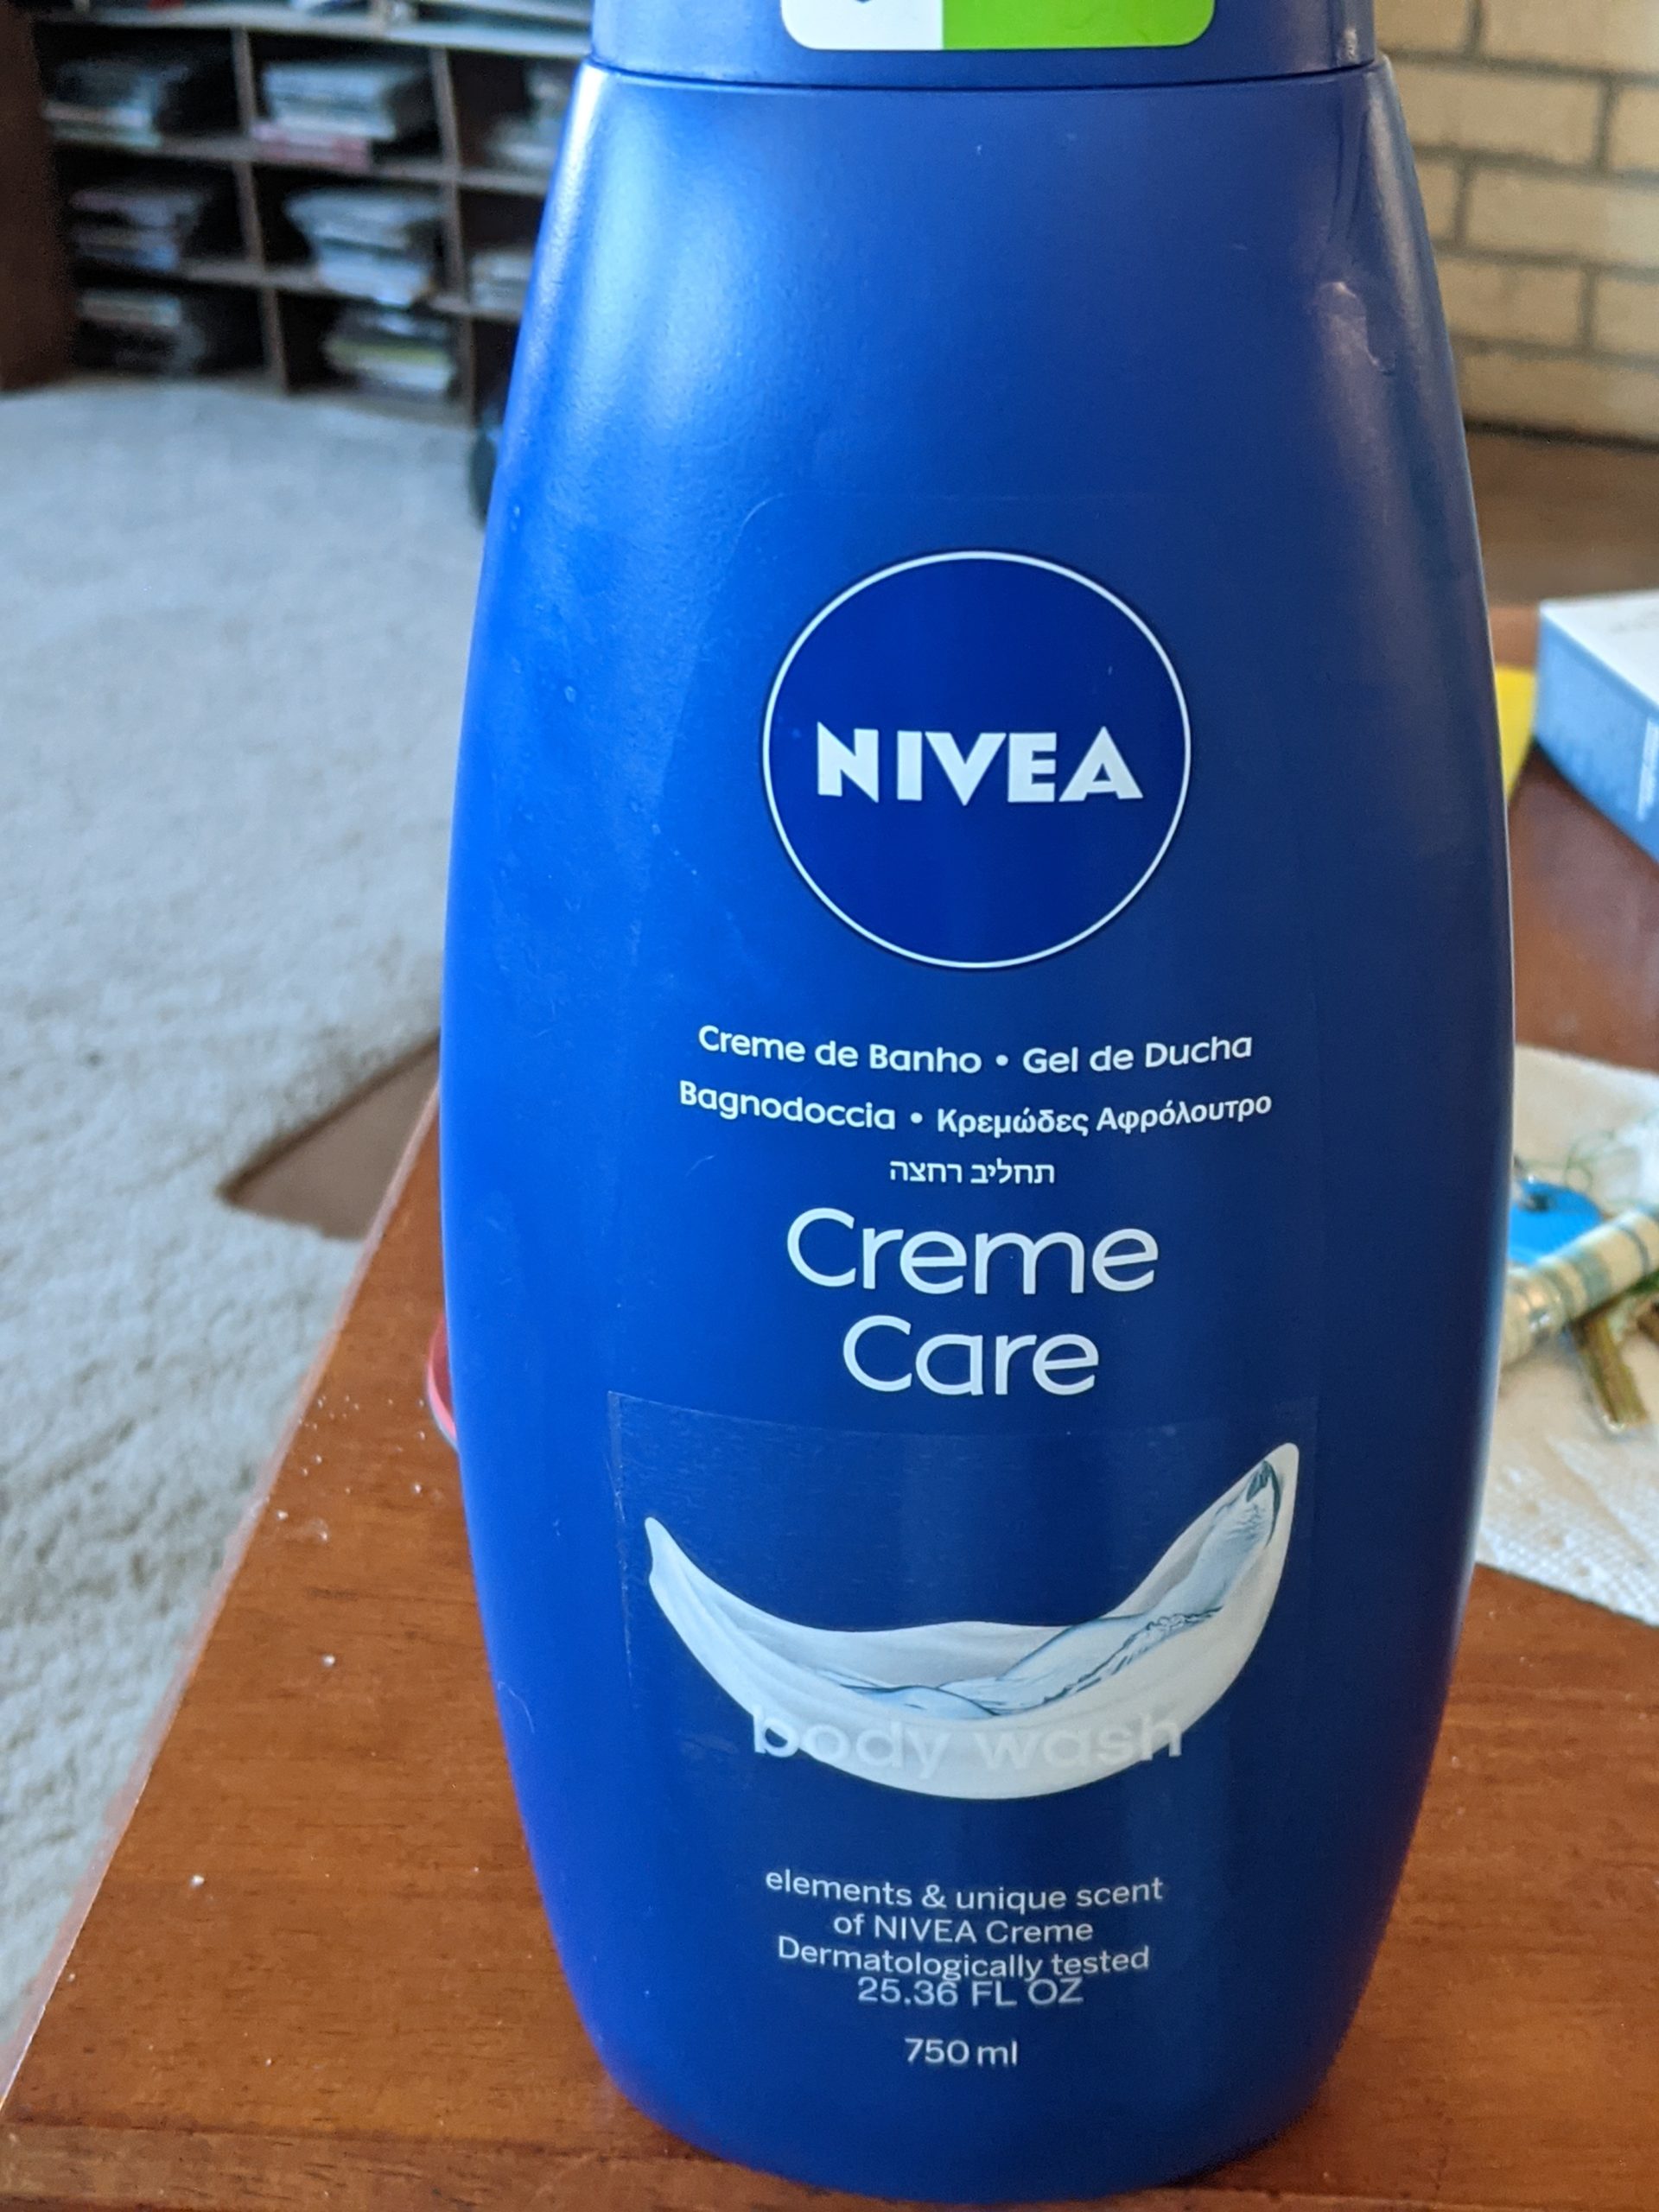 Nivea complaint Deceiving label on creme care body wash